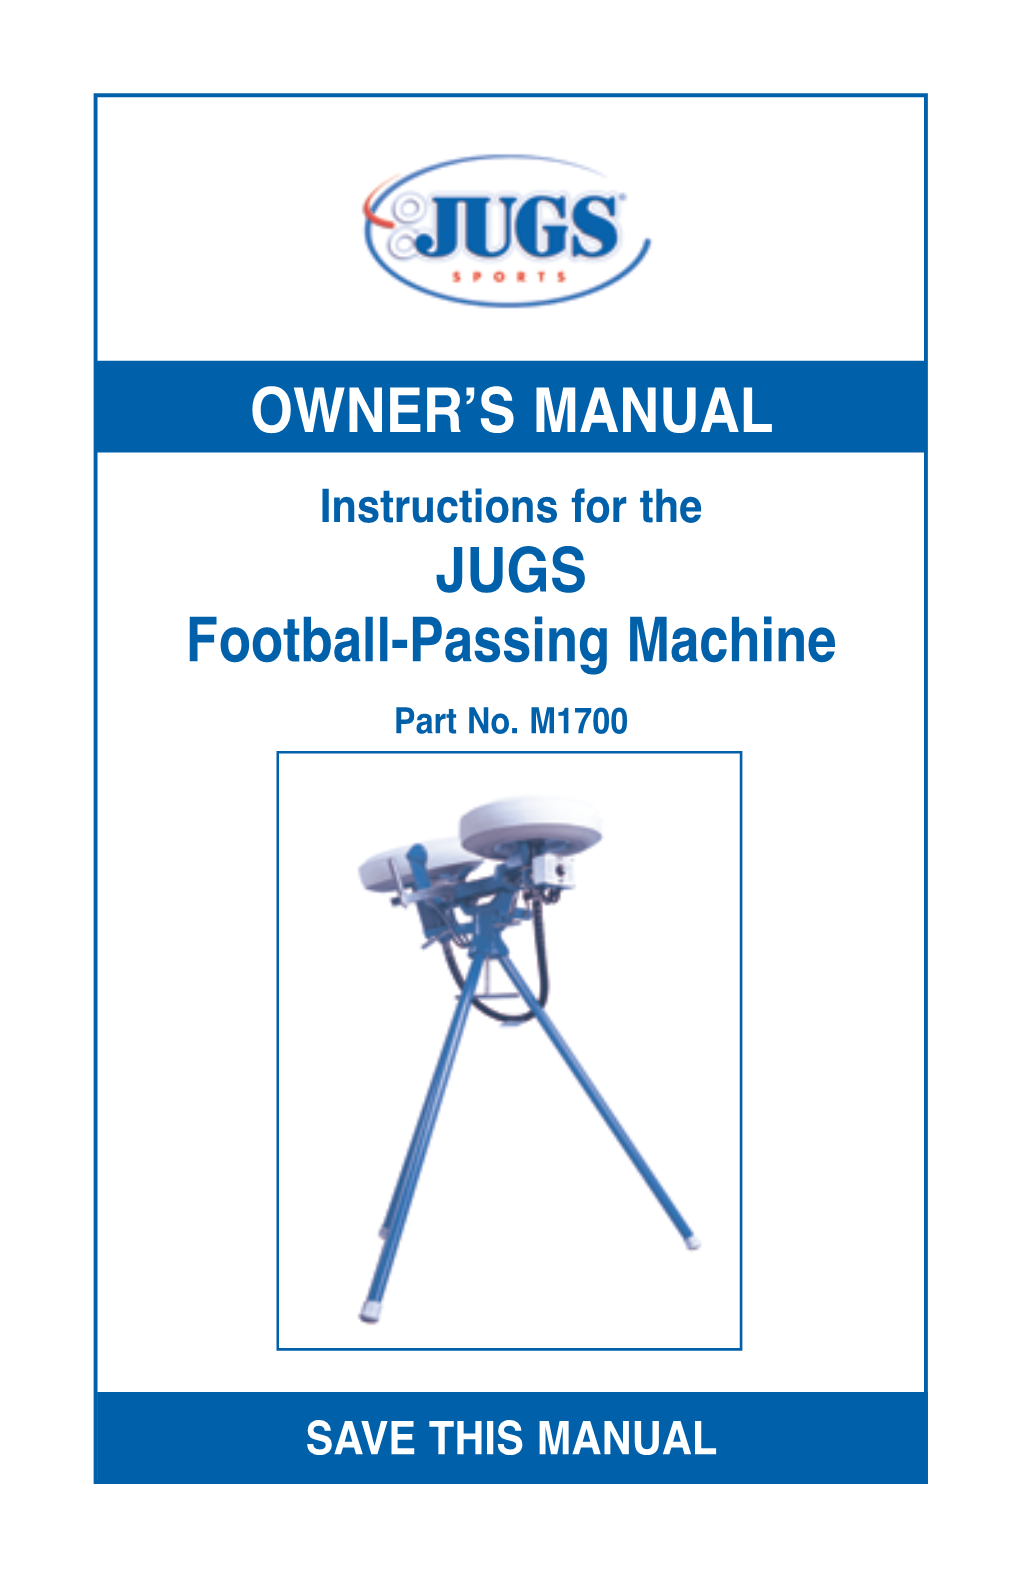 OWNER's MANUAL JUGS Football-Passing Machine